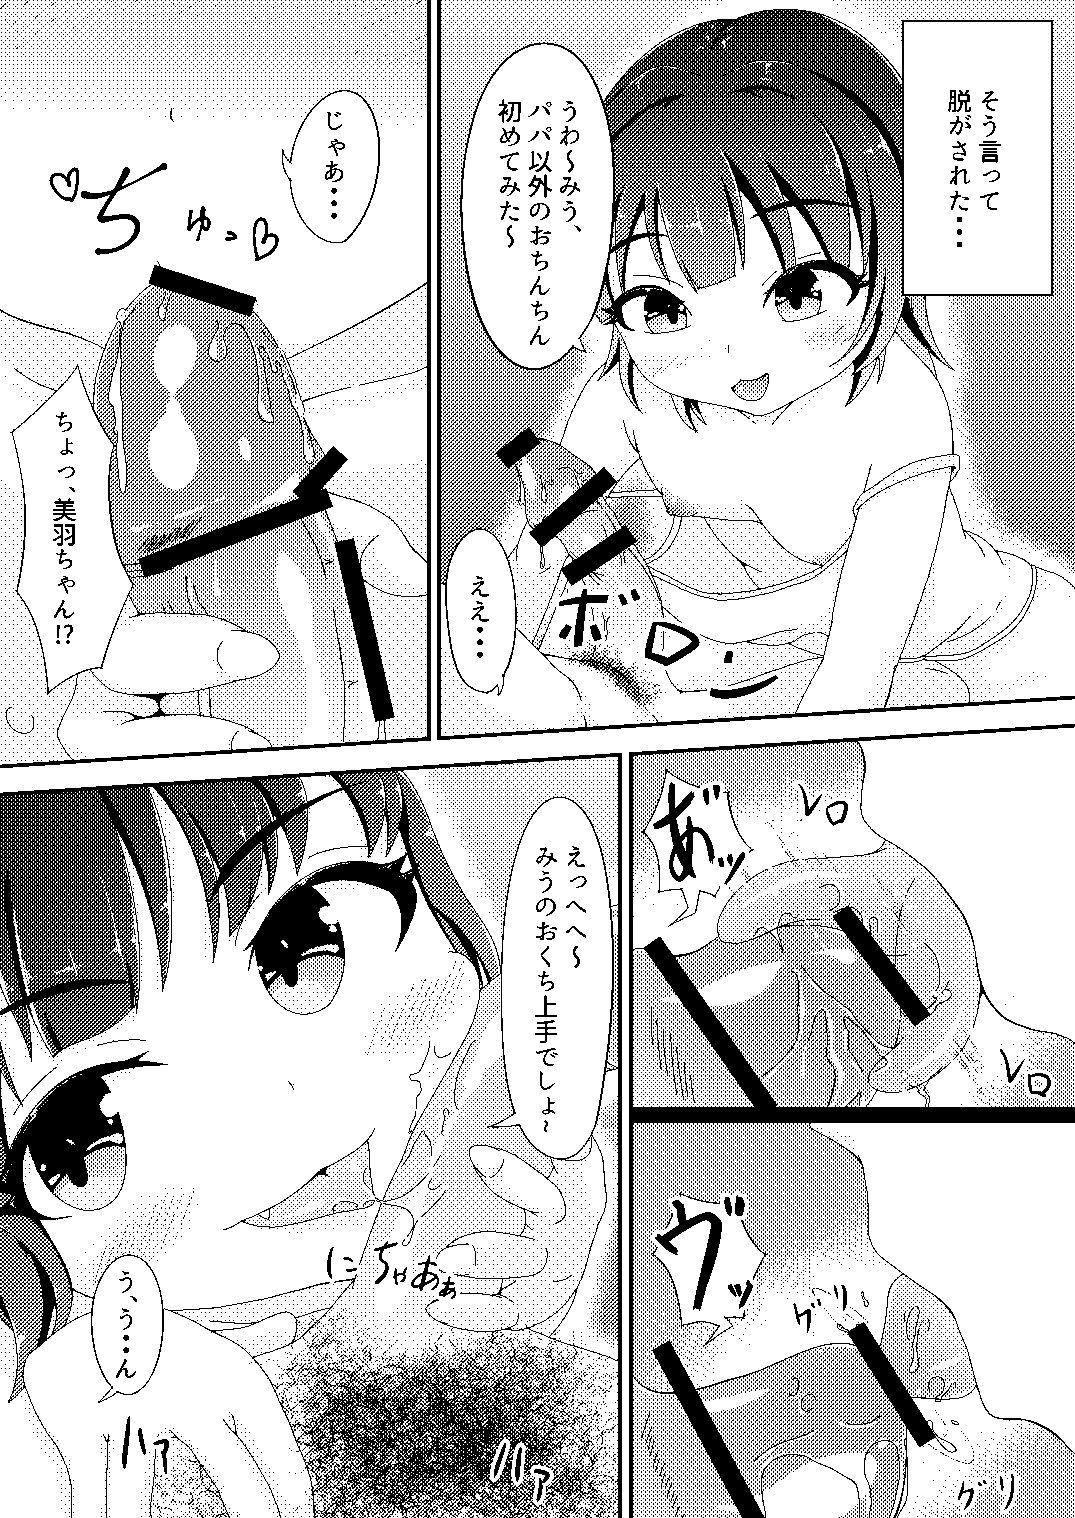 Licking Original Manga - Original Pretty - Page 5